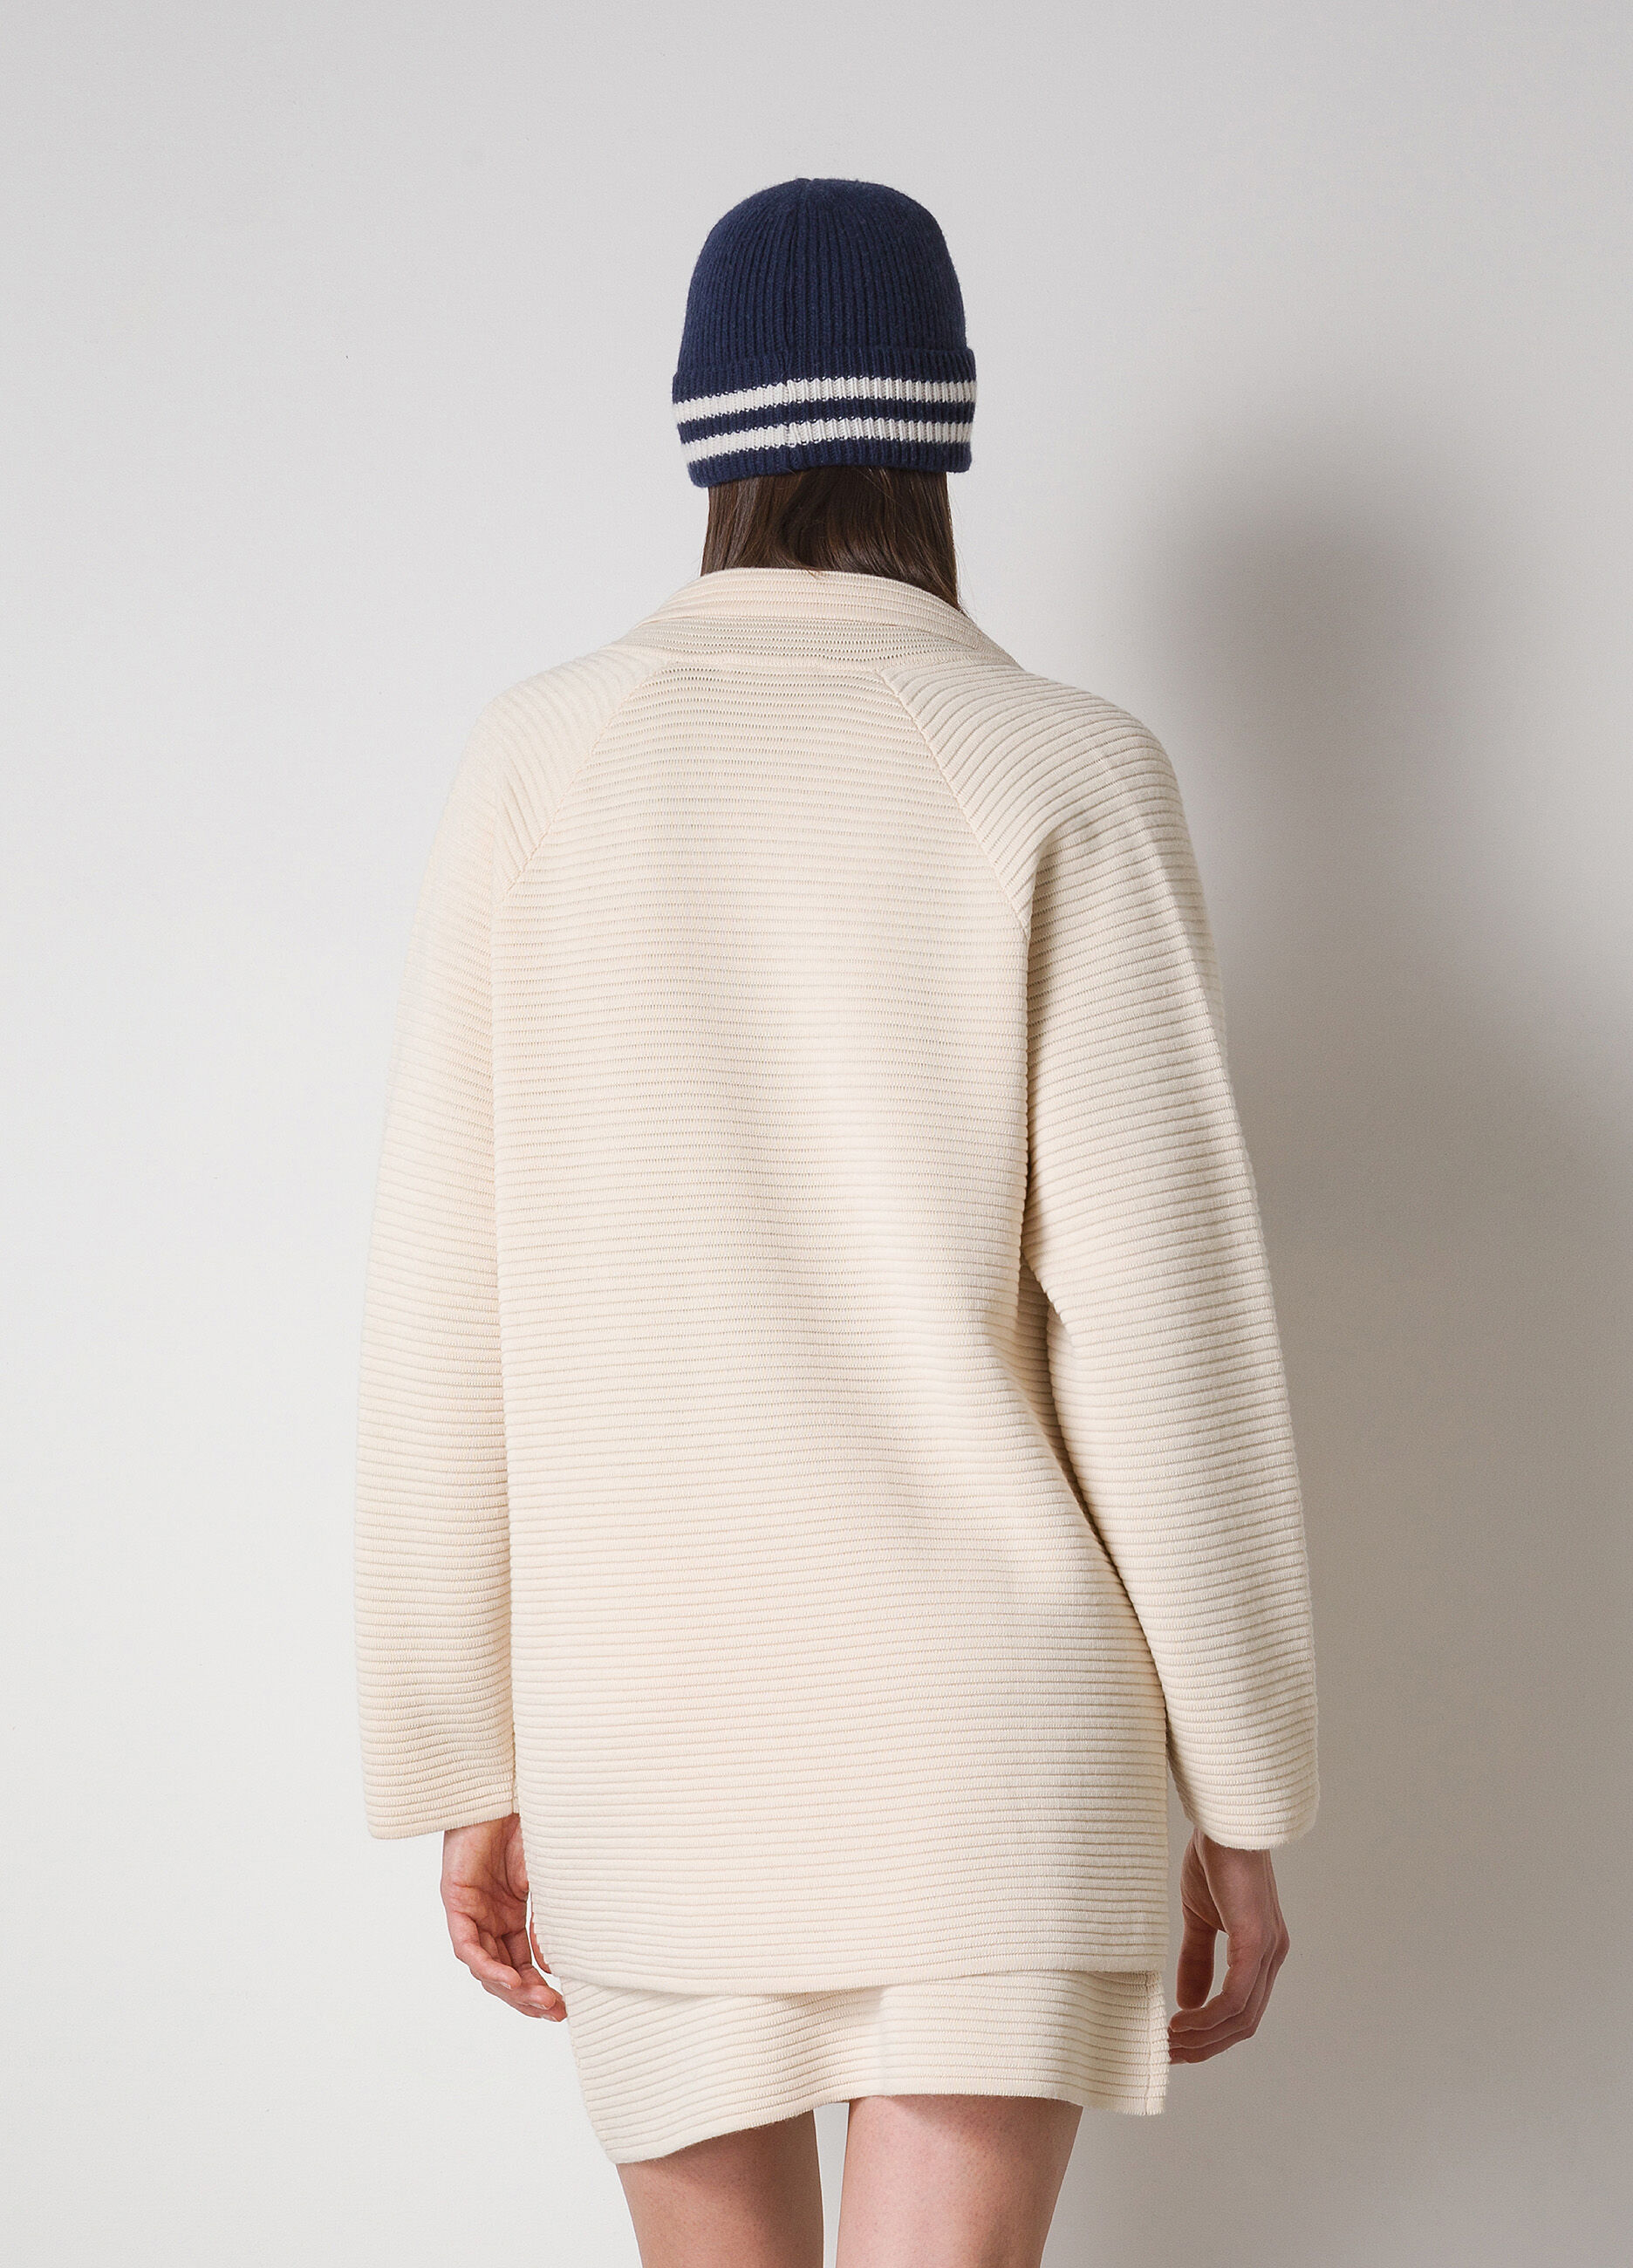 Blazer tricot in misto lana merino_1